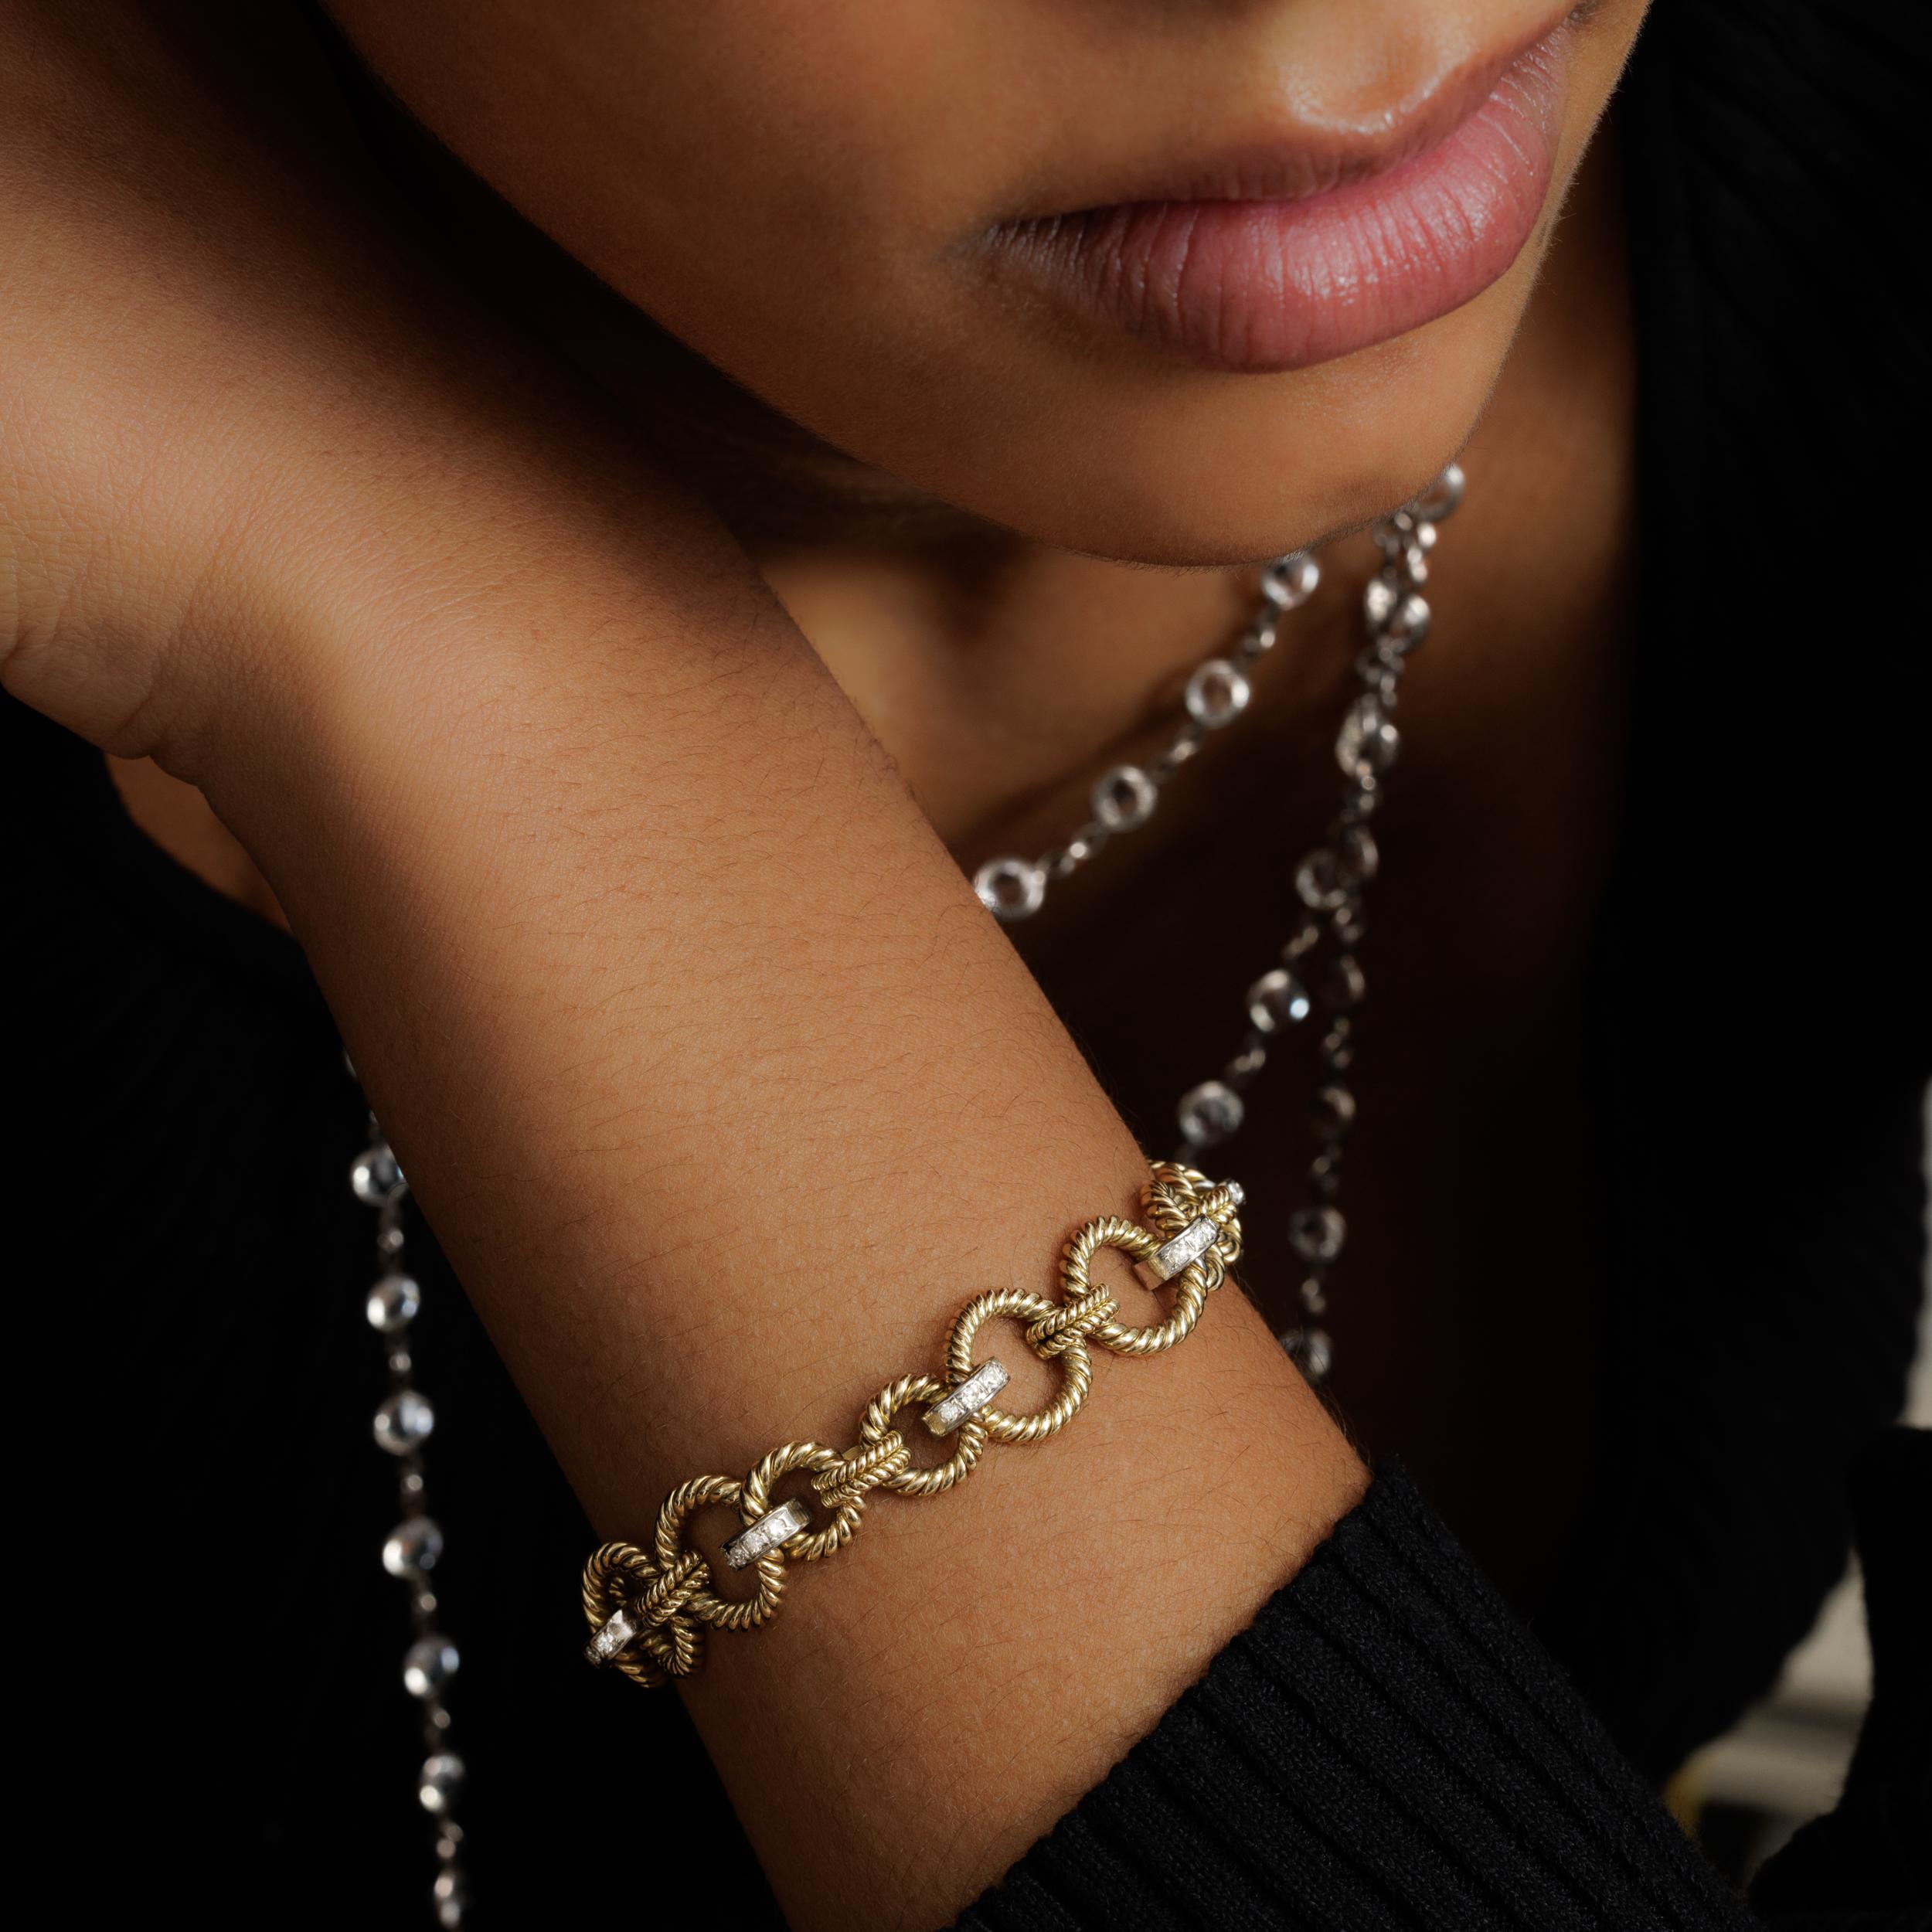 Estate Gold Bracelet with 0.90 Carats Diamonds

L 18cm x W 8.72cm
37 grams